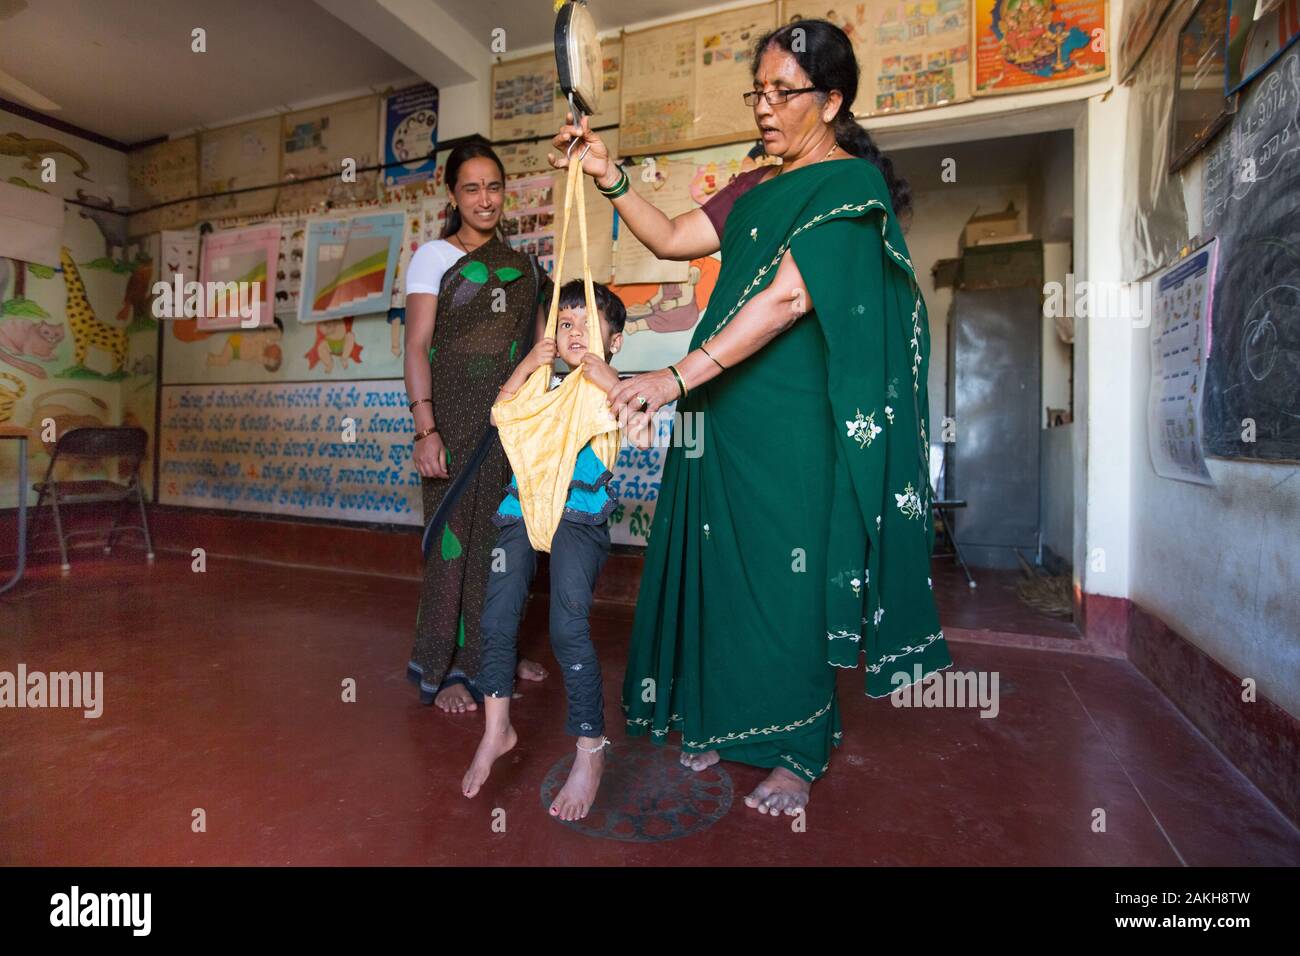 Description : En vertu de l'Chamkol anganwadi, programme (école maternelle) des travailleurs comme Shashikala va bientôt commencer à recevoir une formation axée sur les moyens de réduire au t Banque D'Images